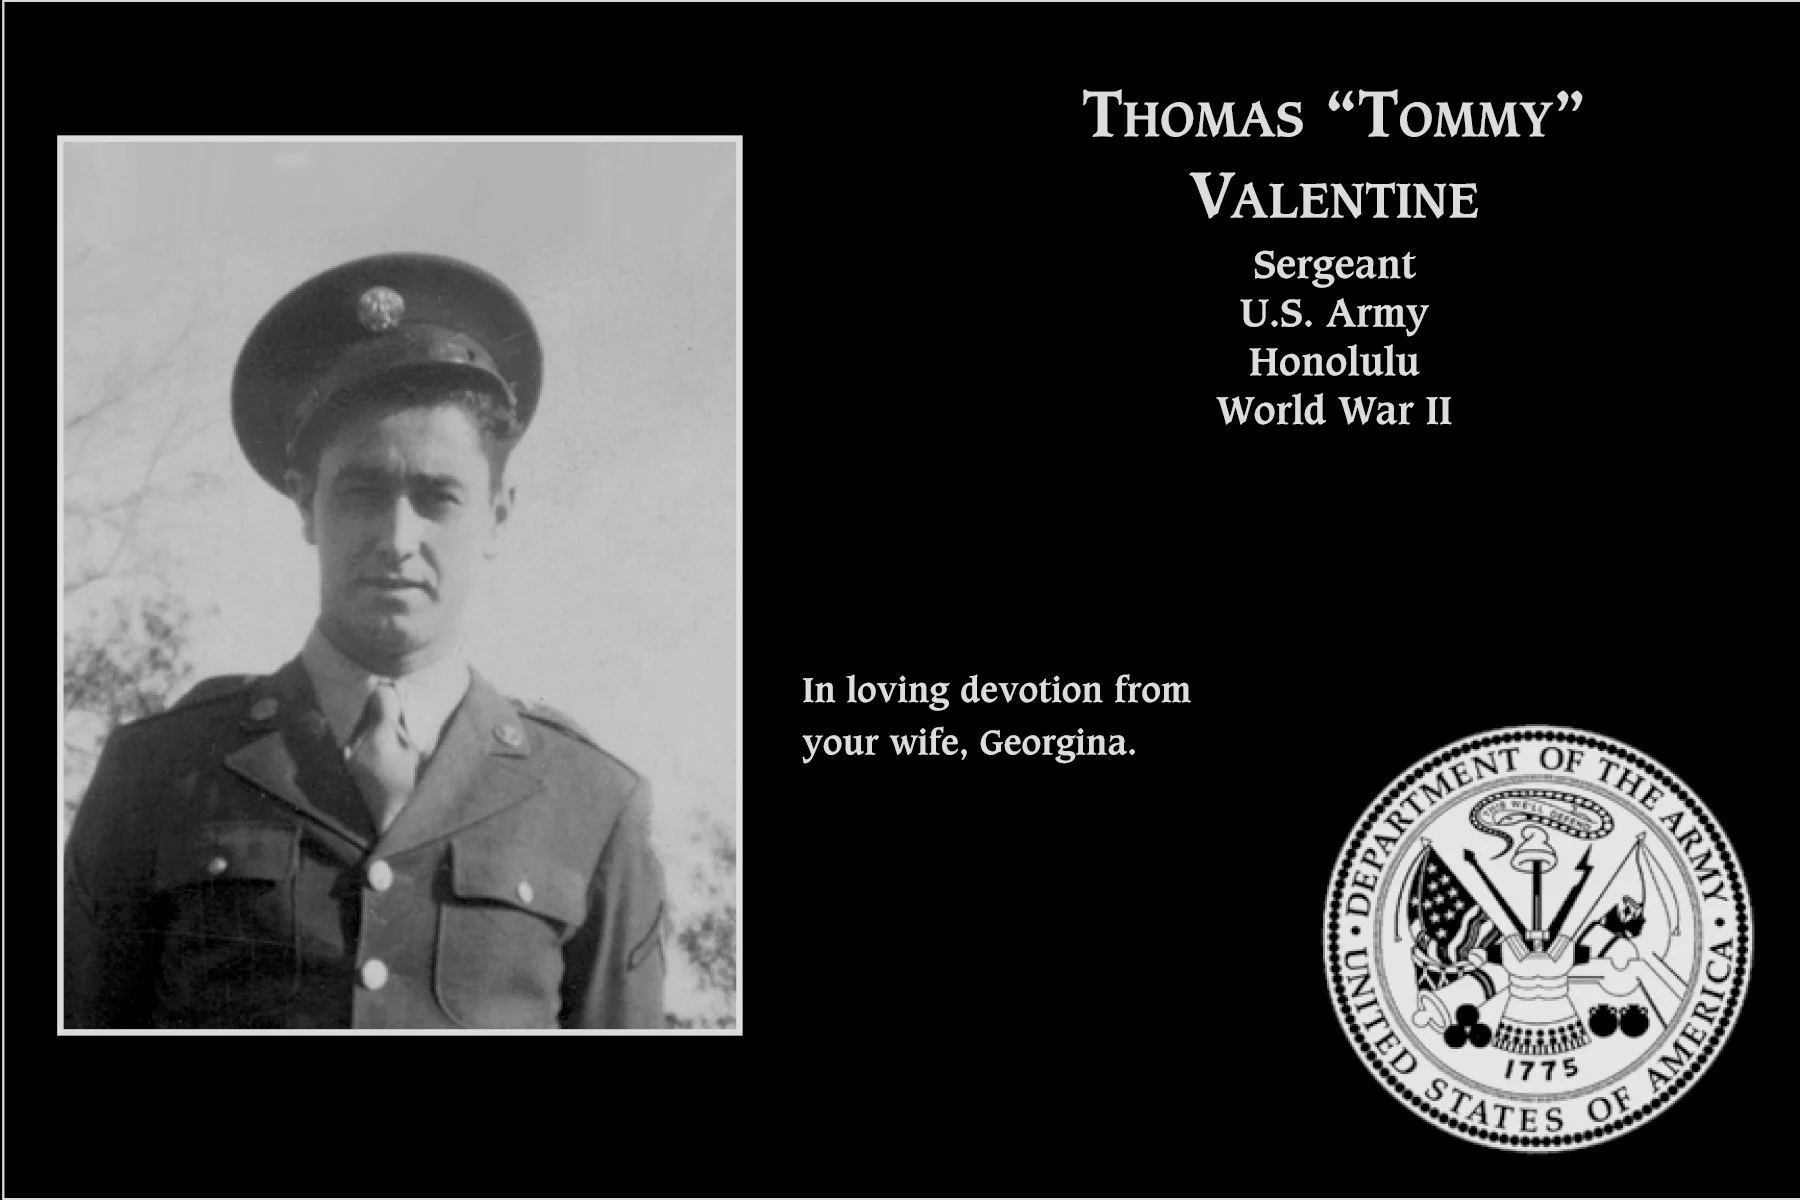 Thomas “Tommy” Valentine